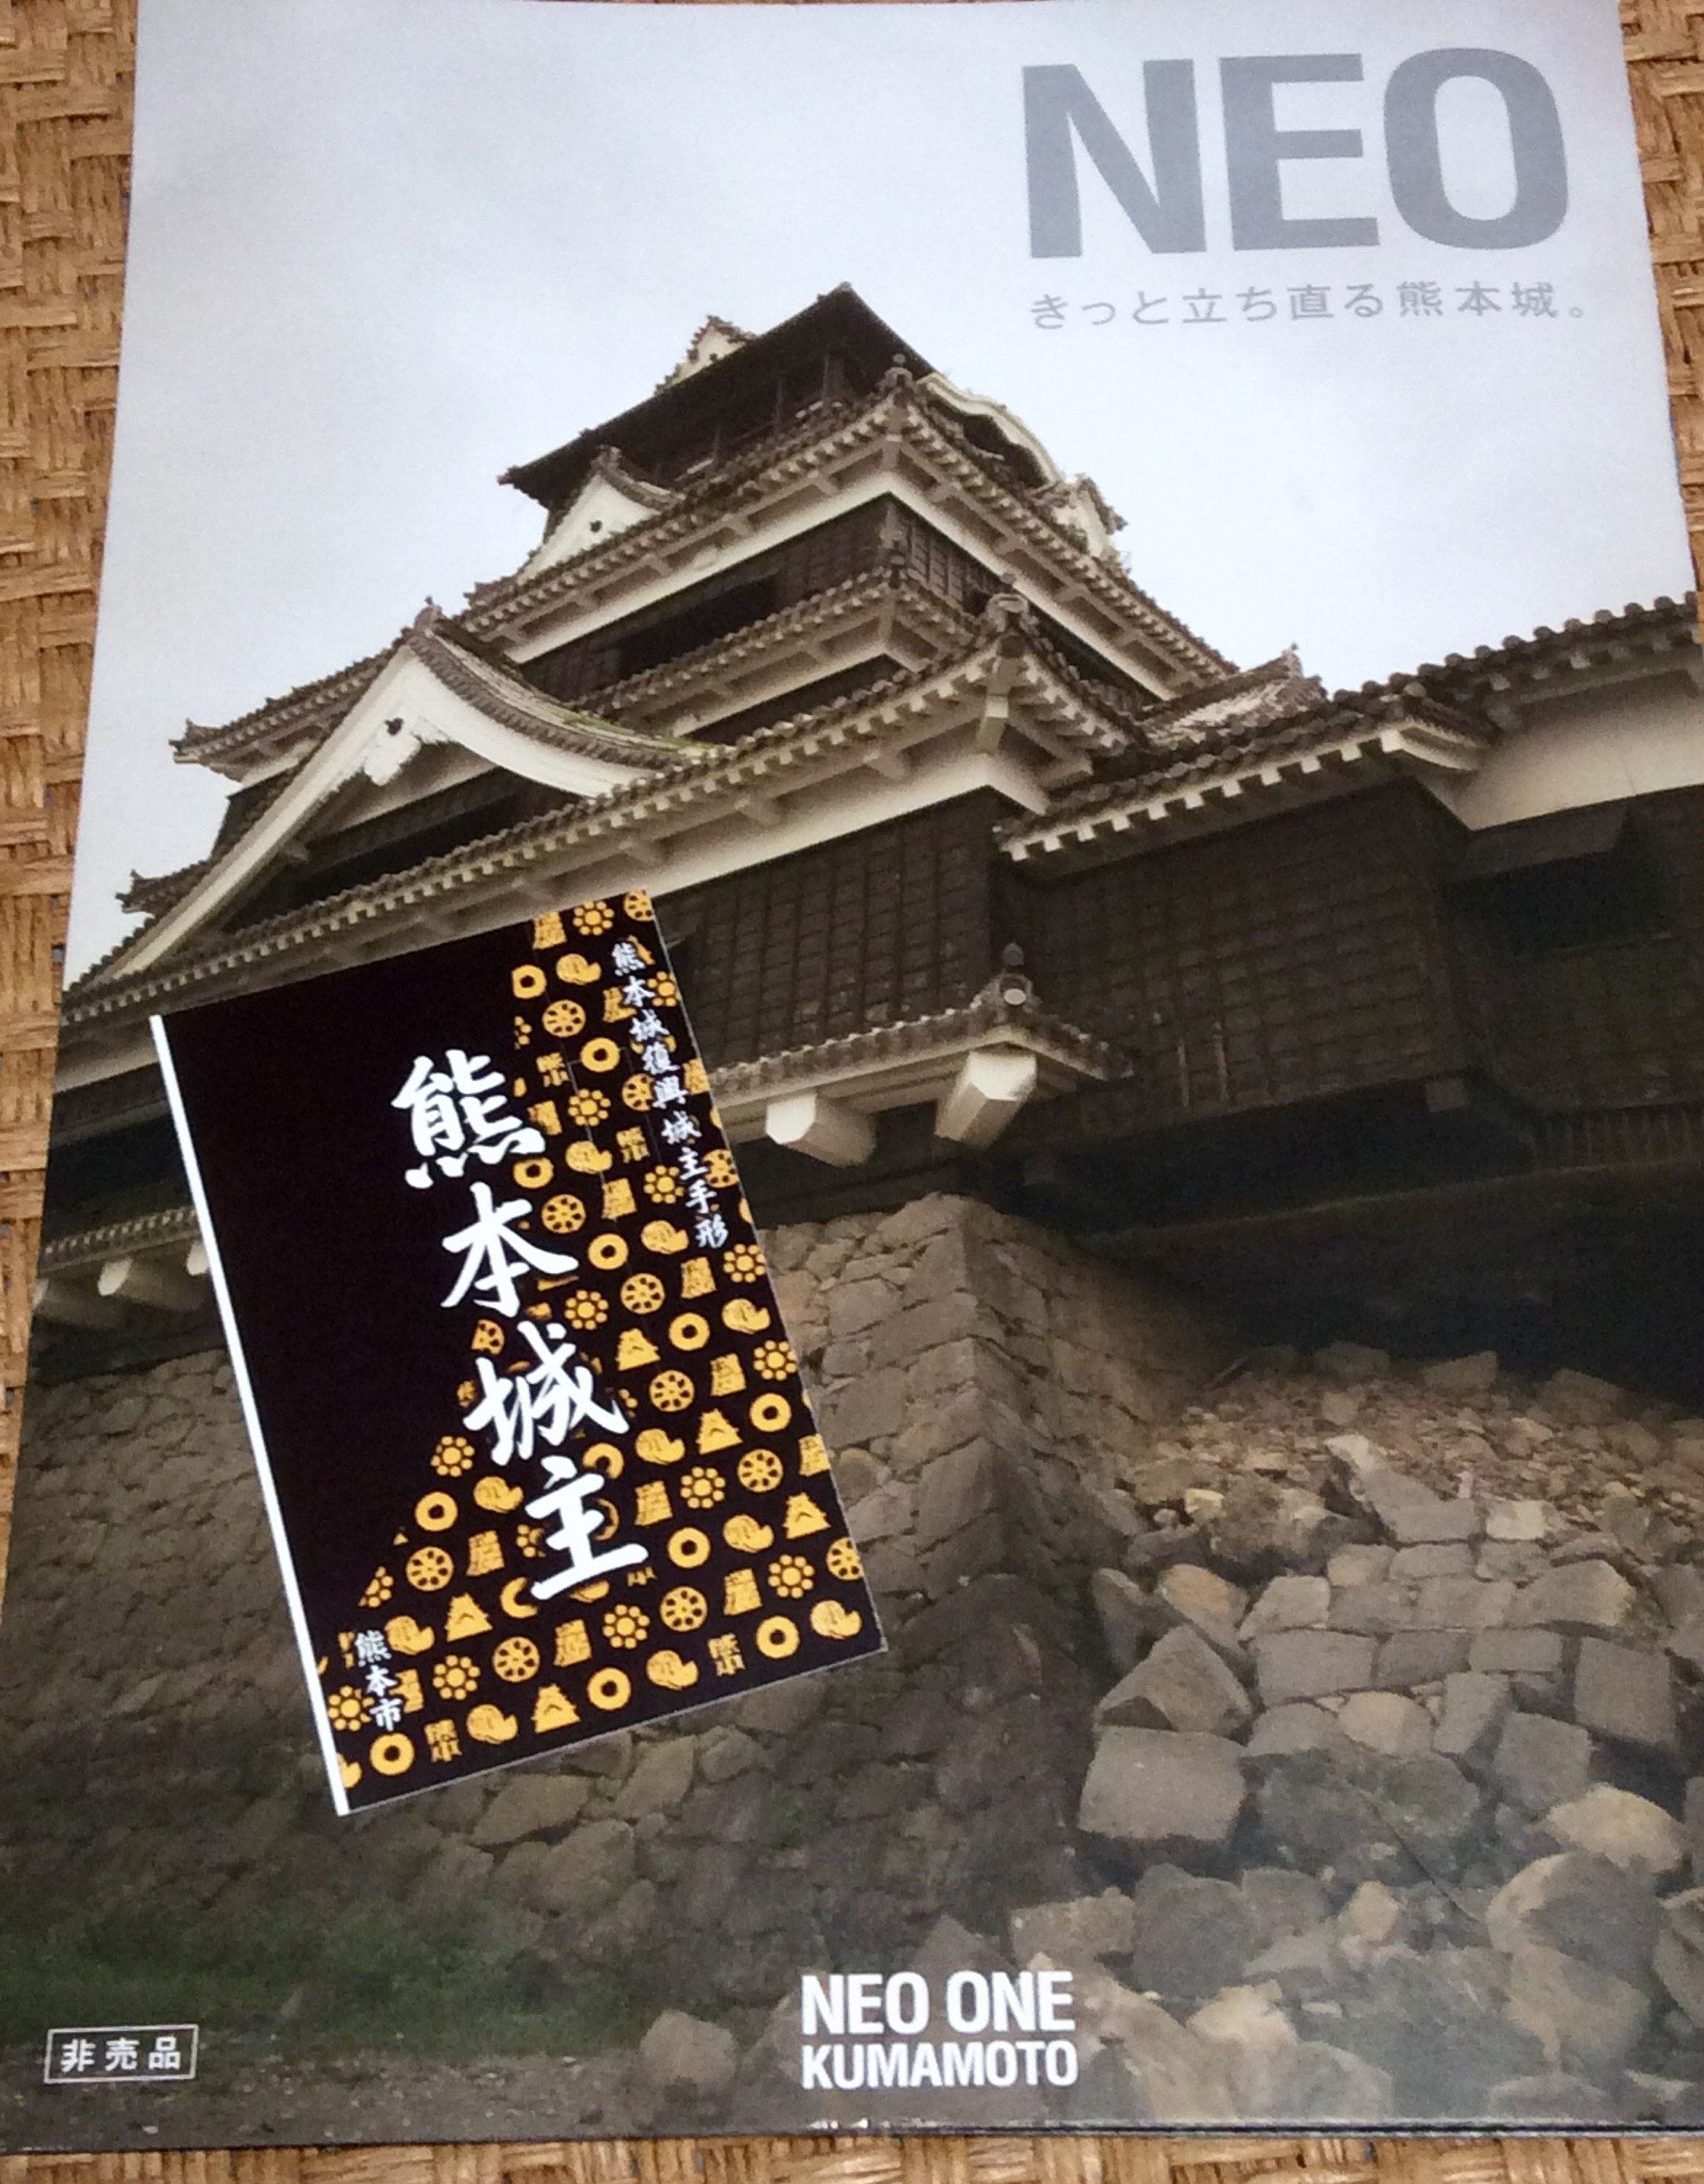 熊本城復興に向けて